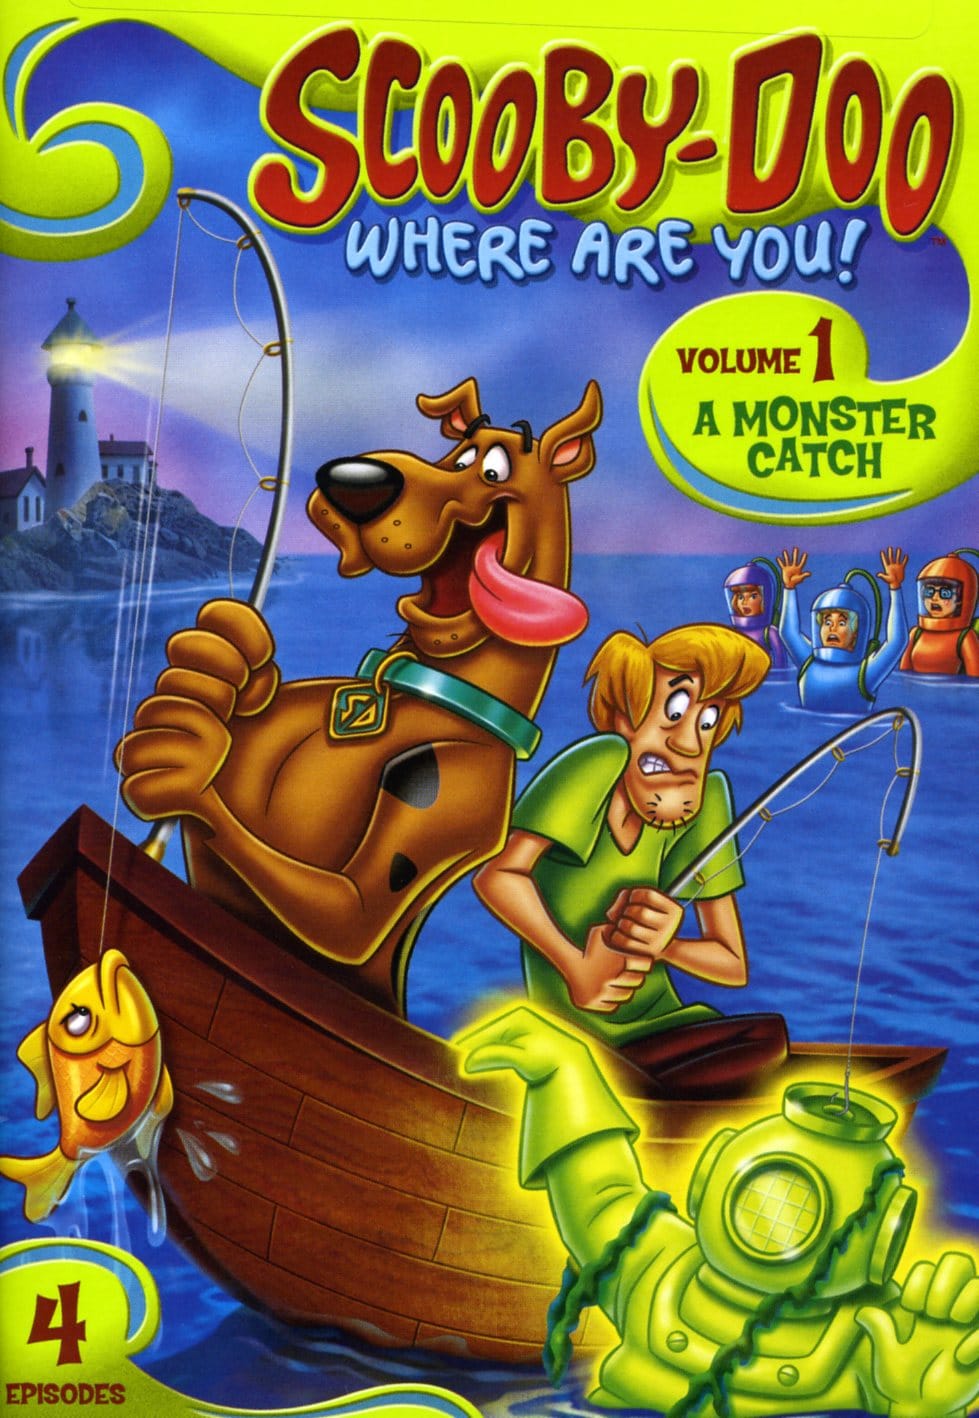 Scooby Doo, Where Are You? Season 1 Vol 1 (DVD)   Shopping